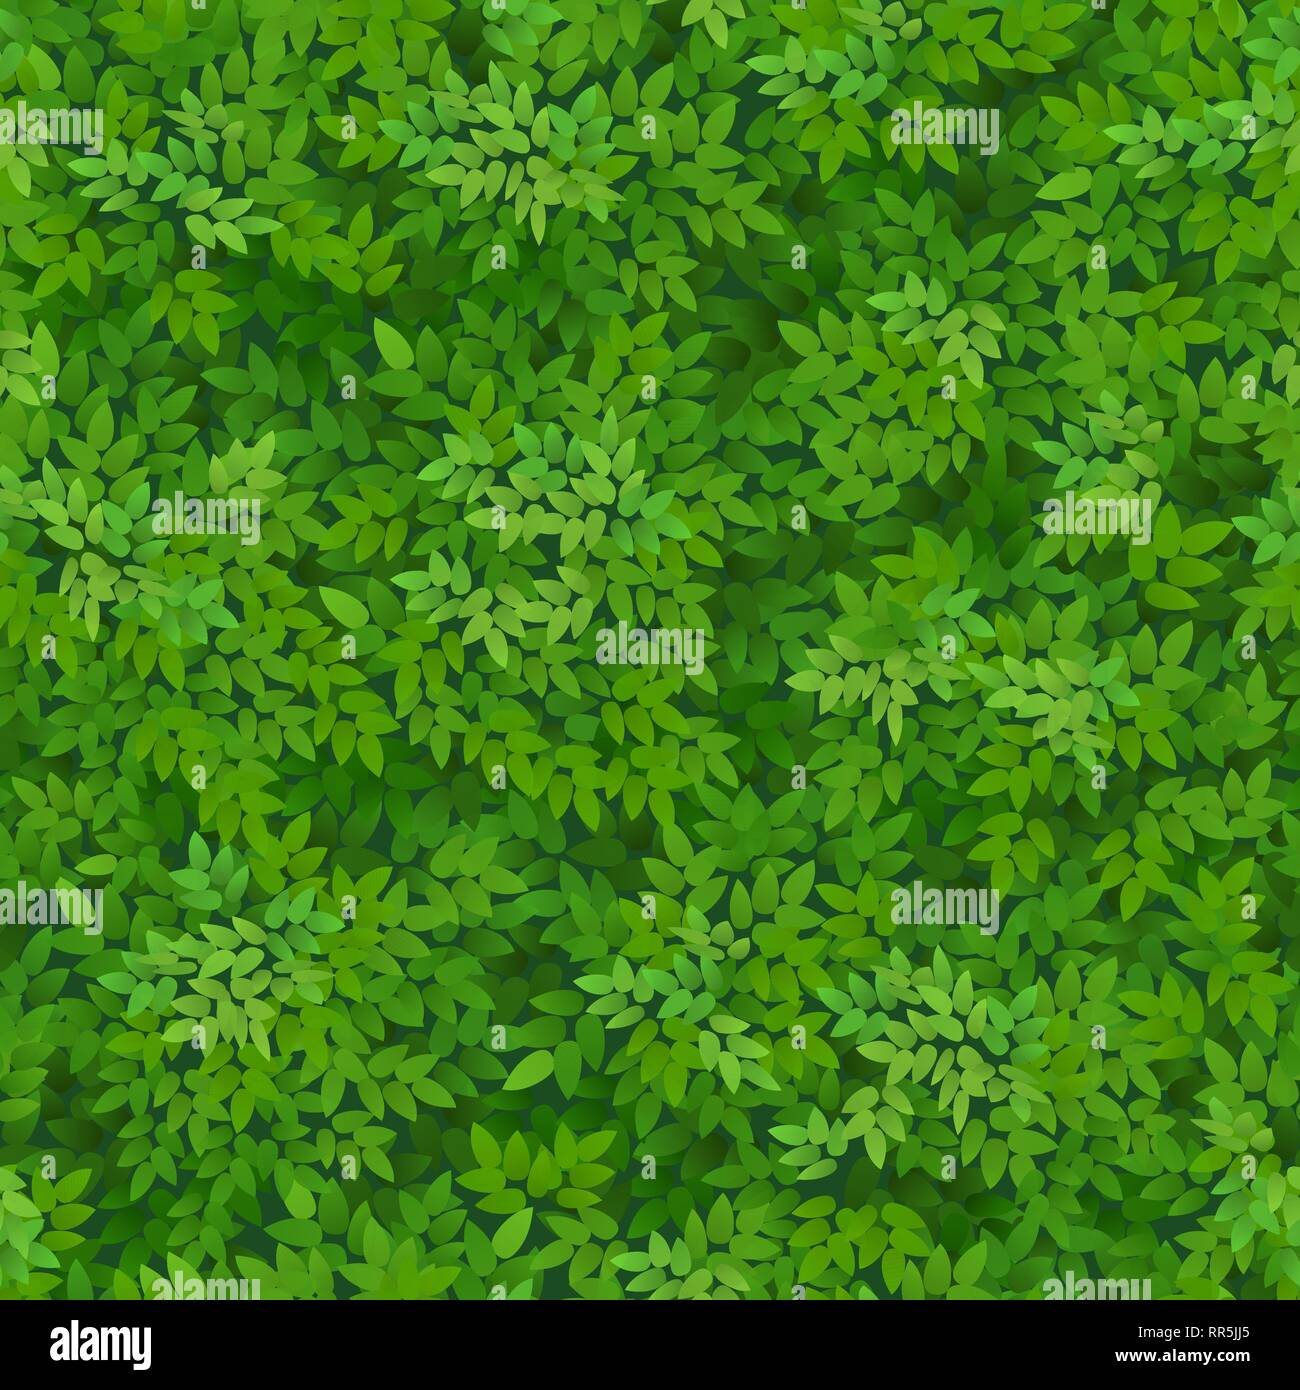 Nahtlose grünes Laub Muster. Grüne Blätter Hintergrund. Florales Dekor. Stock Vektor